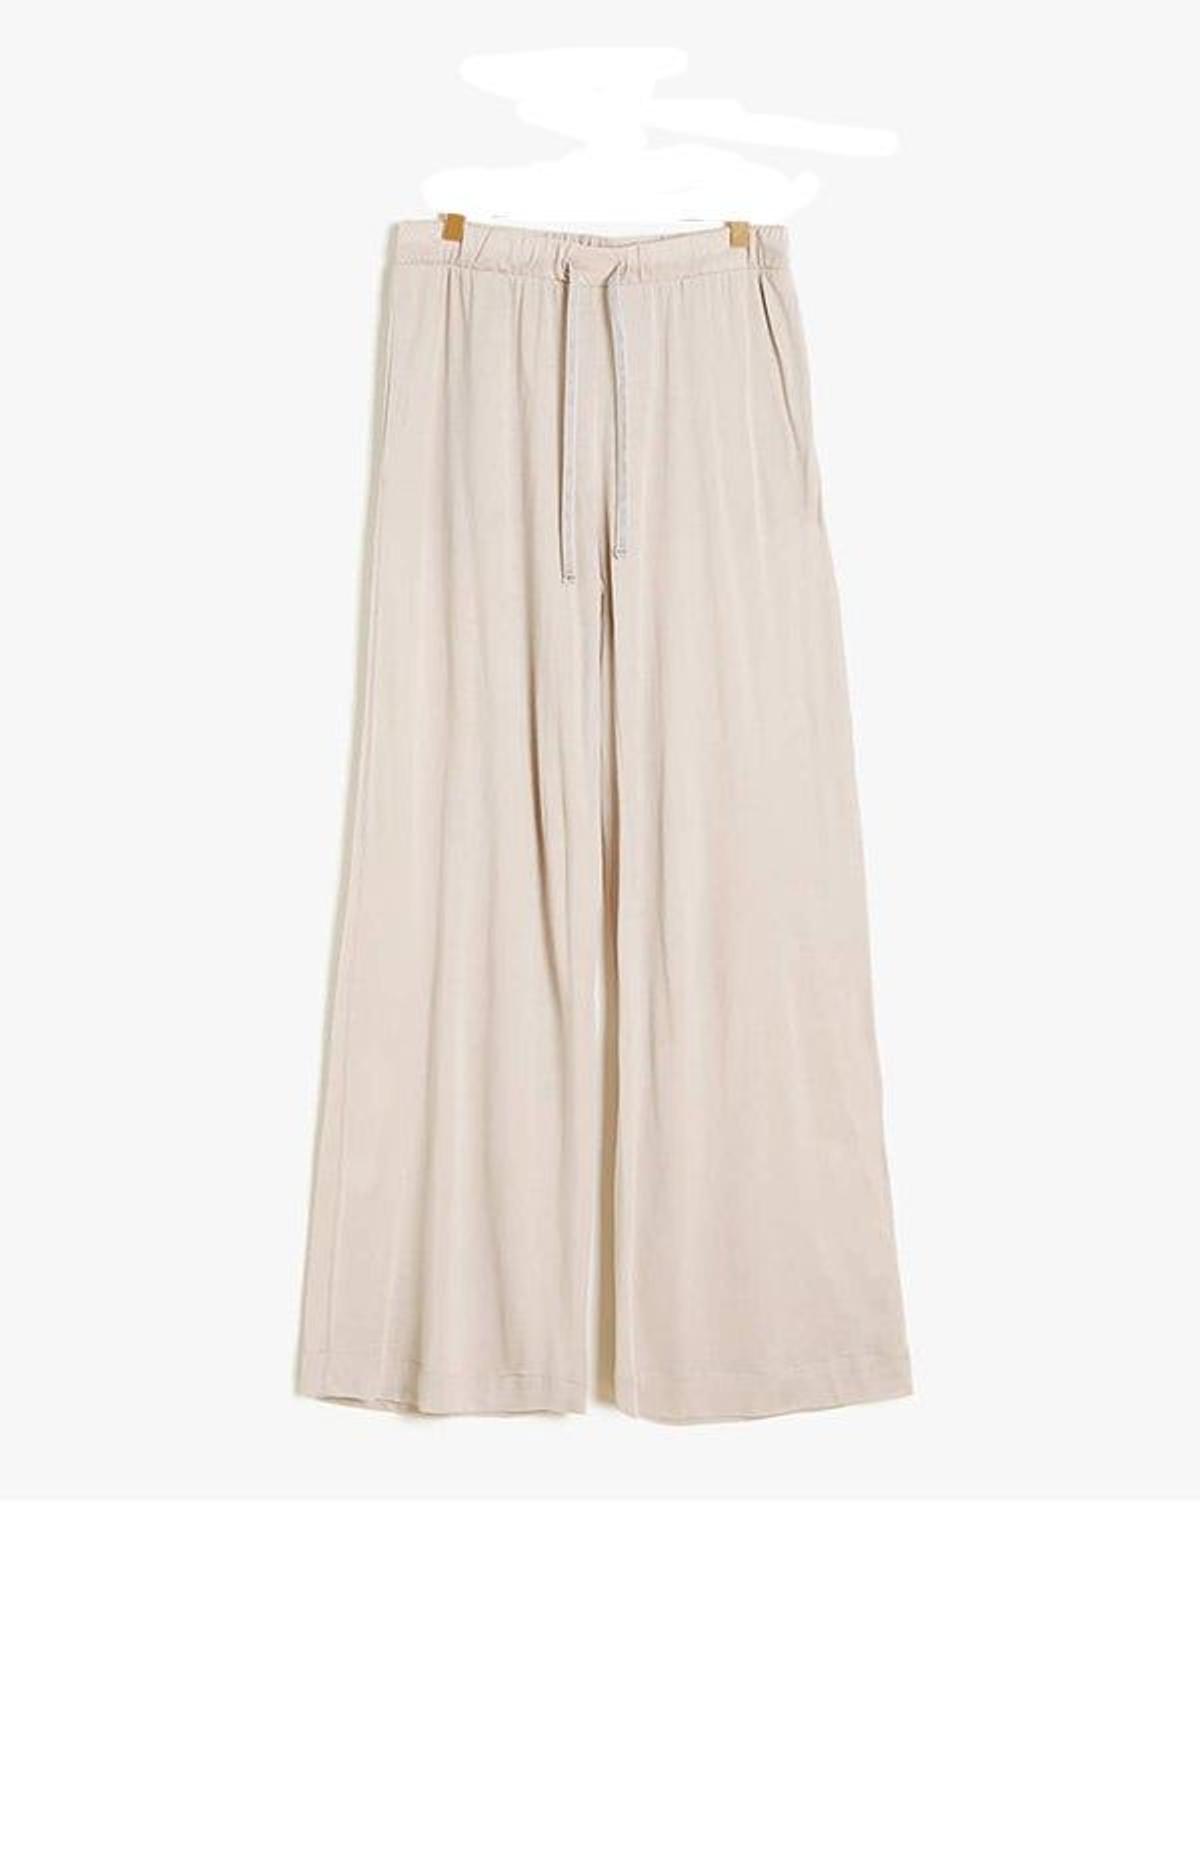 Pantalón culotte, de Zara Home